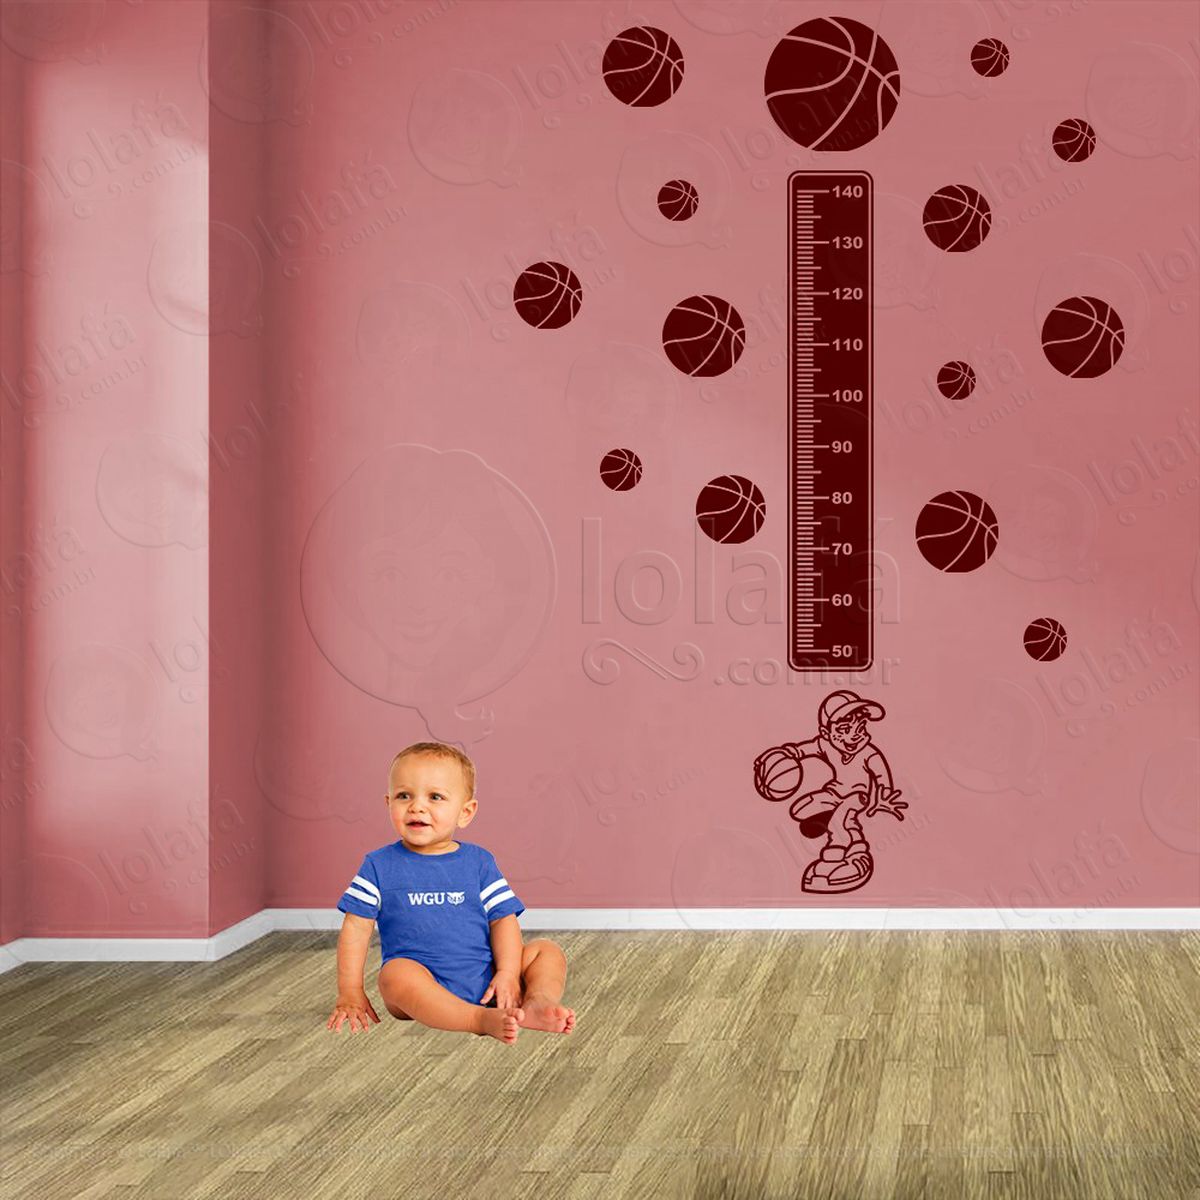 basquetebol e bolas de basquete adesivo régua de crescimento infantil, medidor de altura para quarto, porta e parede - mod:254